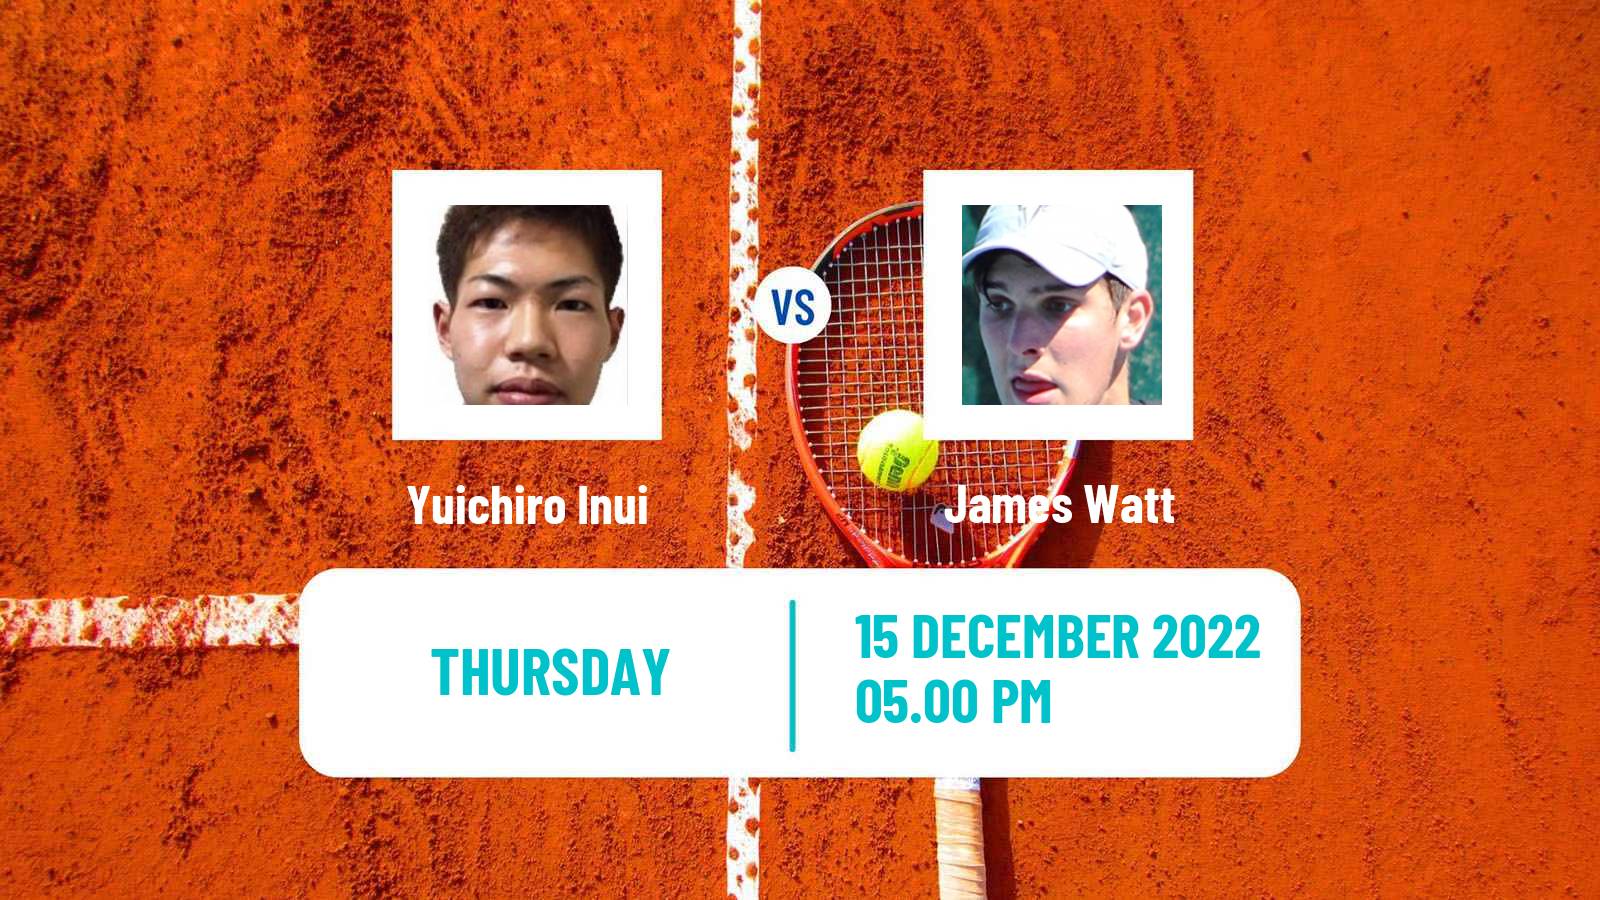 Tennis ITF Tournaments Yuichiro Inui - James Watt